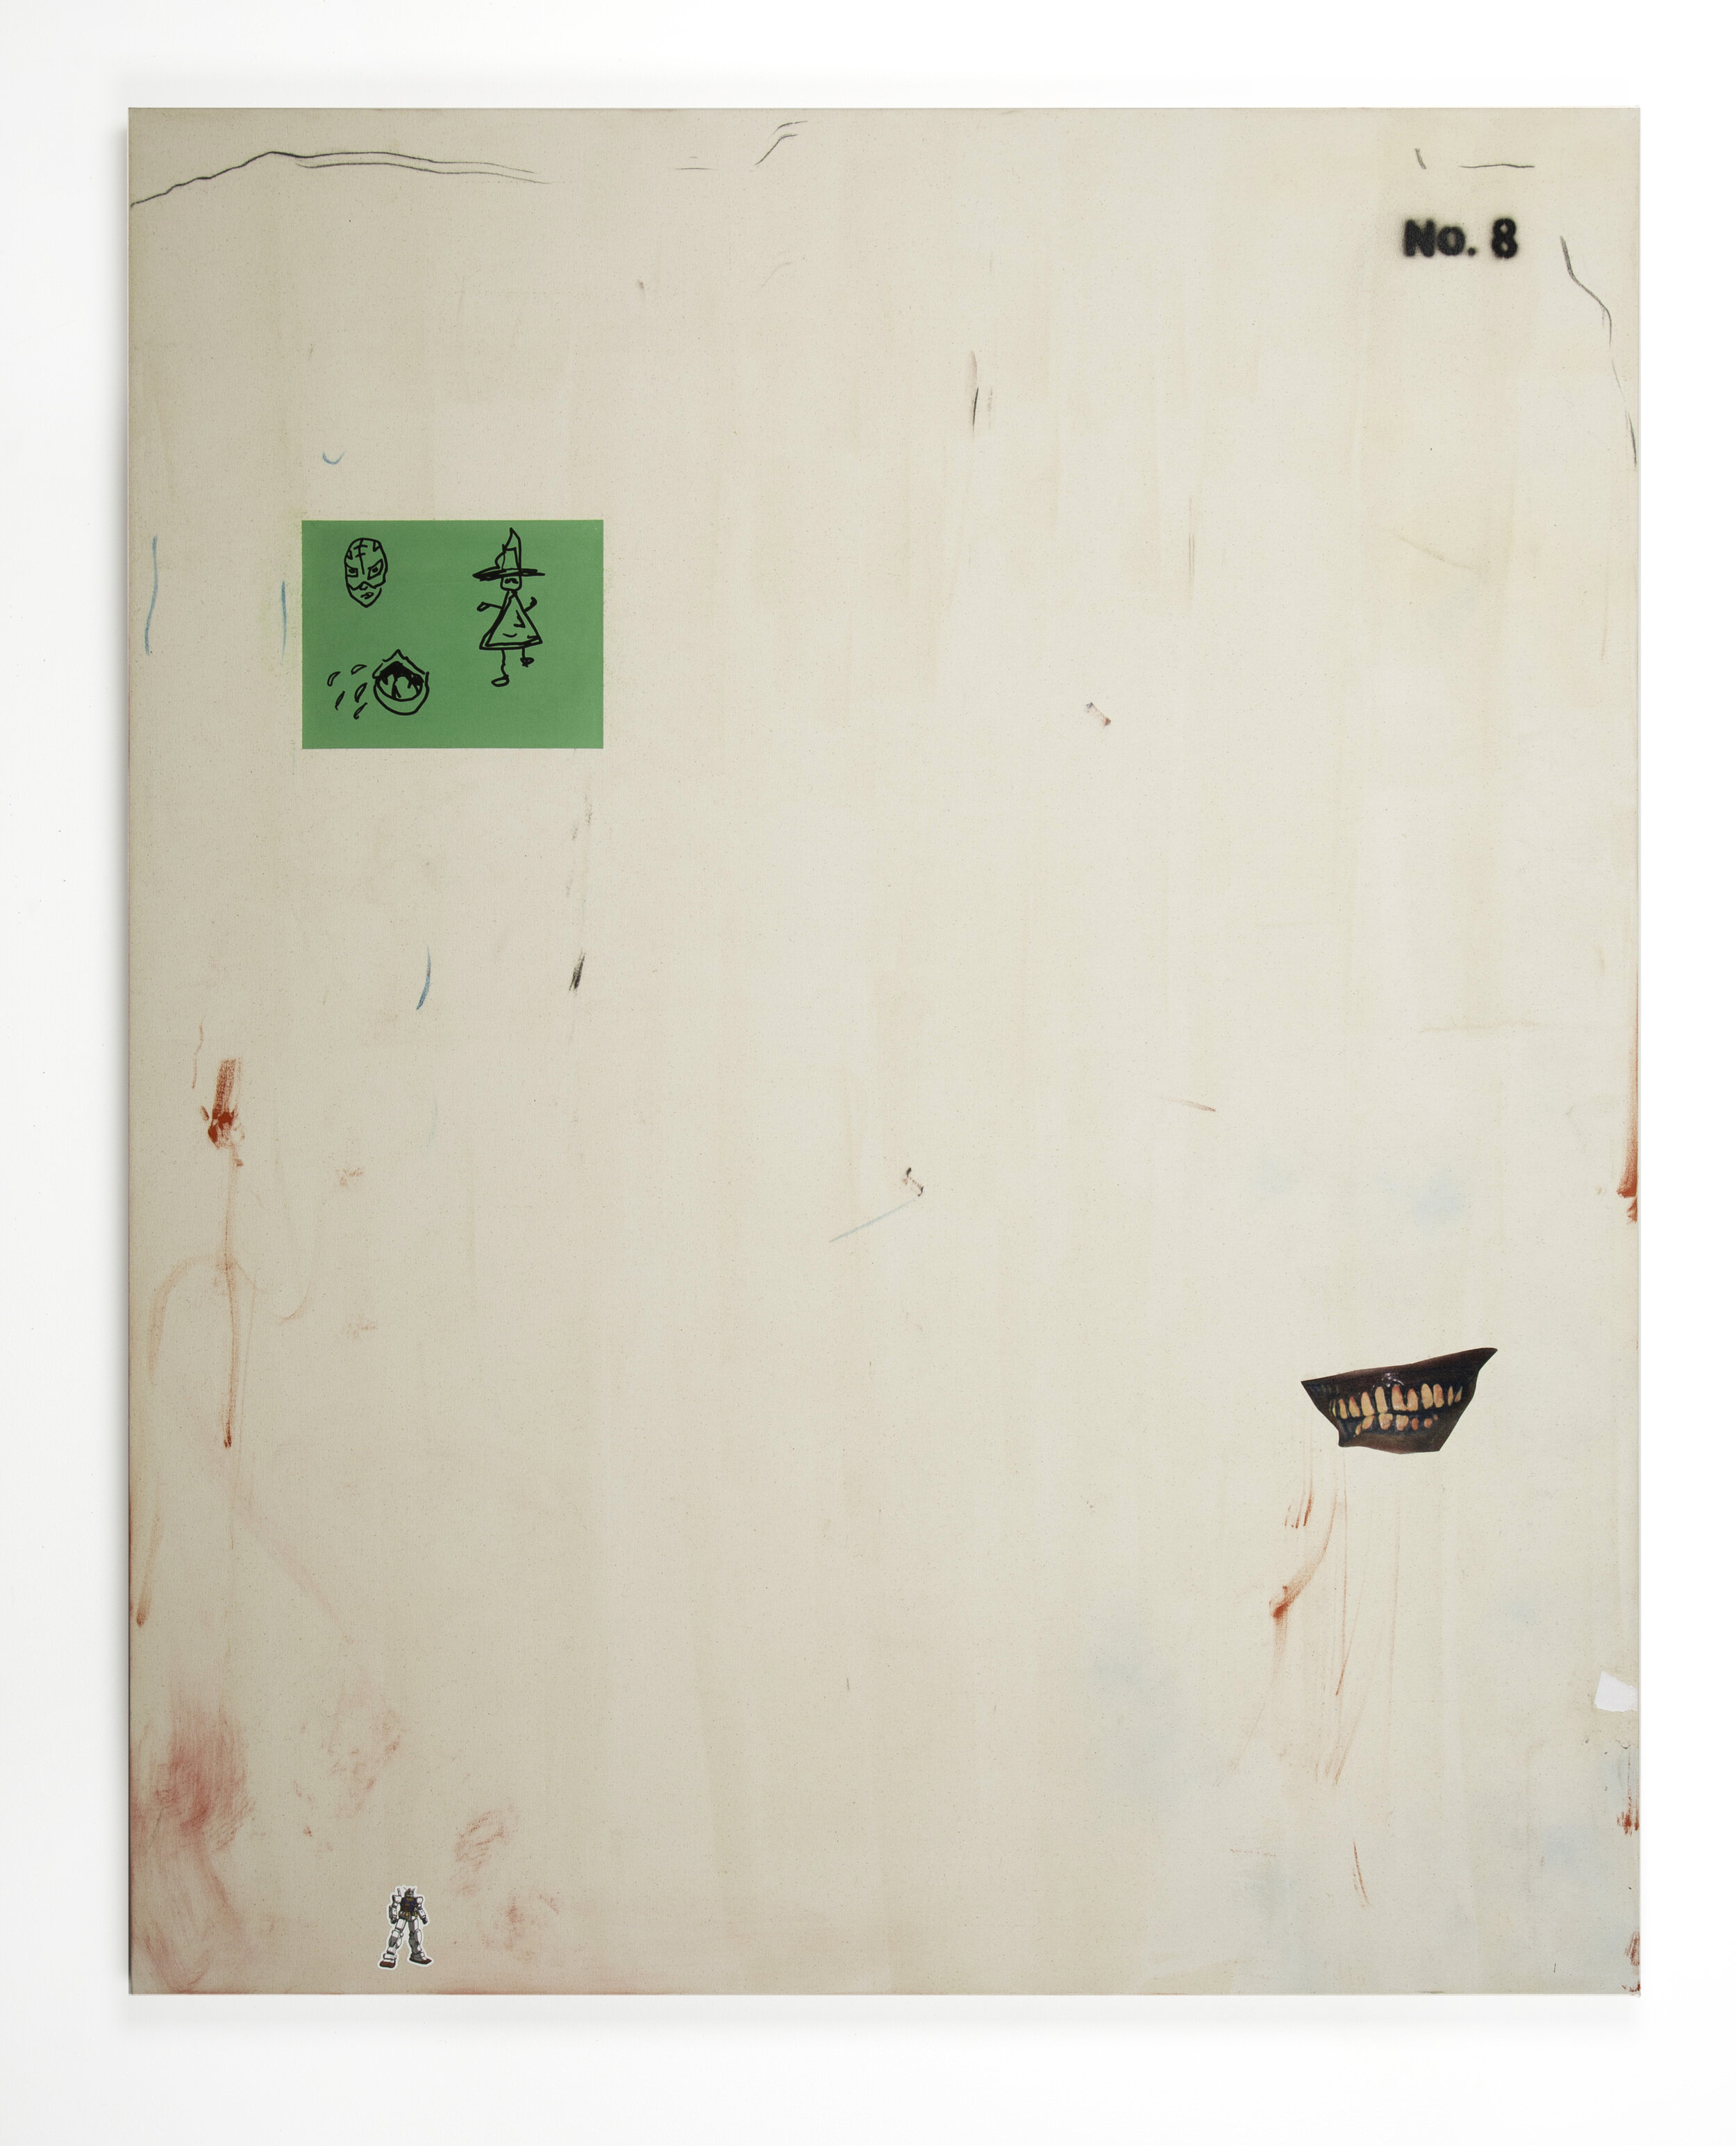 Marker, Spray Paint, Newsprint, Vinyl Sticker, Paper Collage on Canvas, 75" x 60"